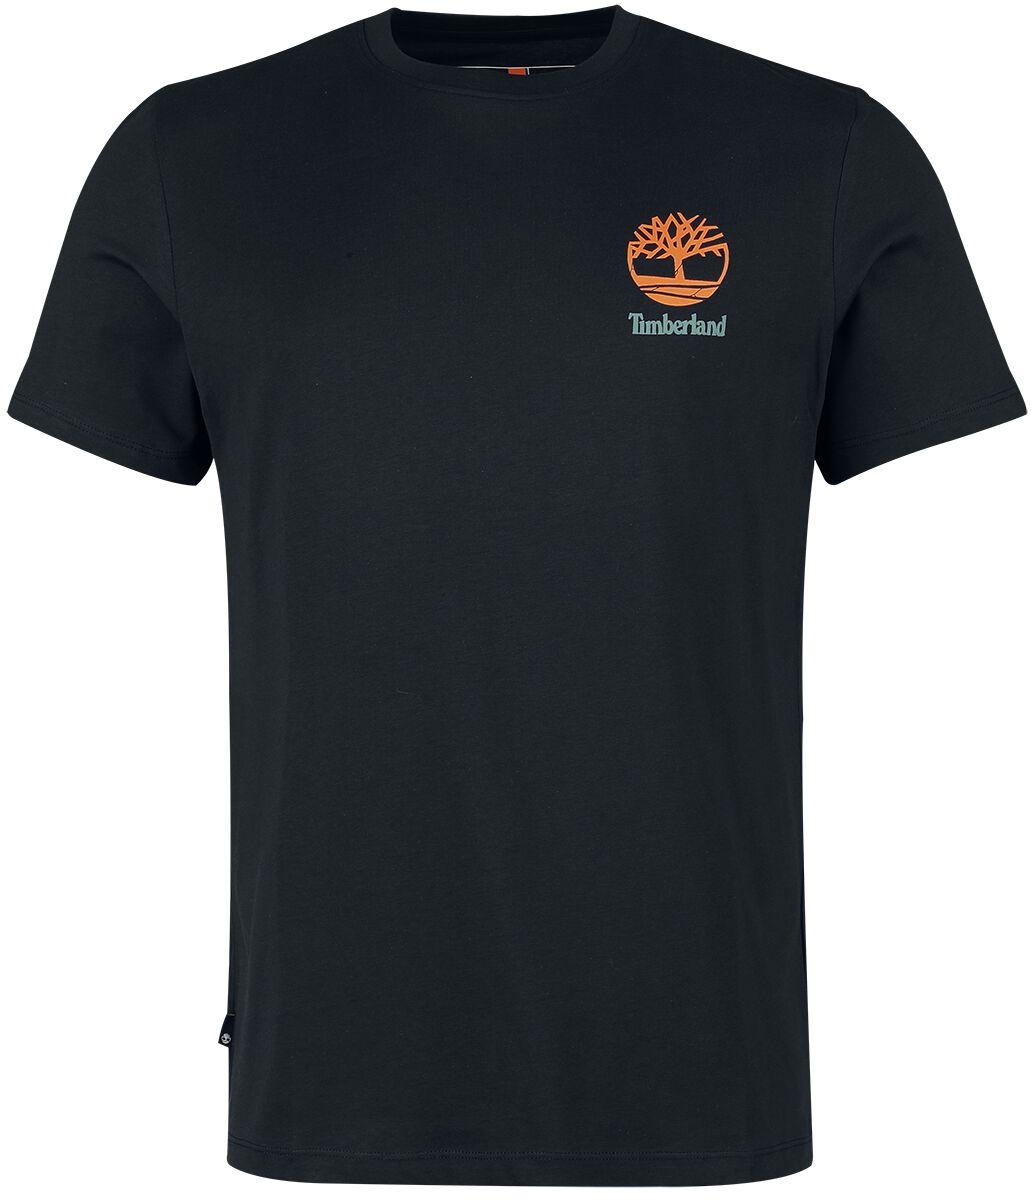 Timberland T-Shirt - Back Graphic Short Sleeve Tee - S bis XXL - für Männer - Größe S - schwarz